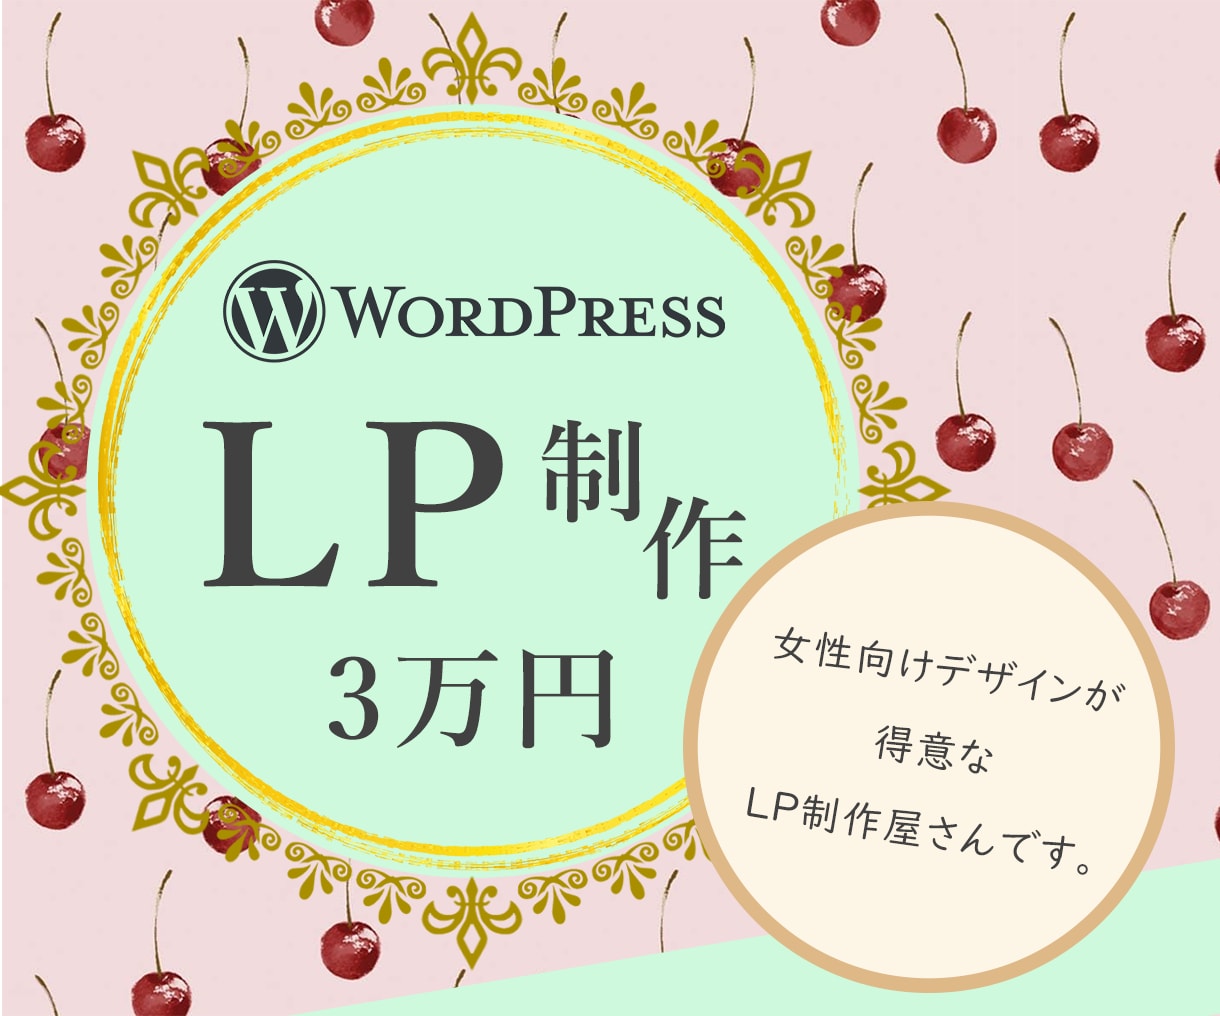 WordpressでおしゃれなLP作ります 現役女性Webデザイナーが女性向けデザインのLPお作りします イメージ1